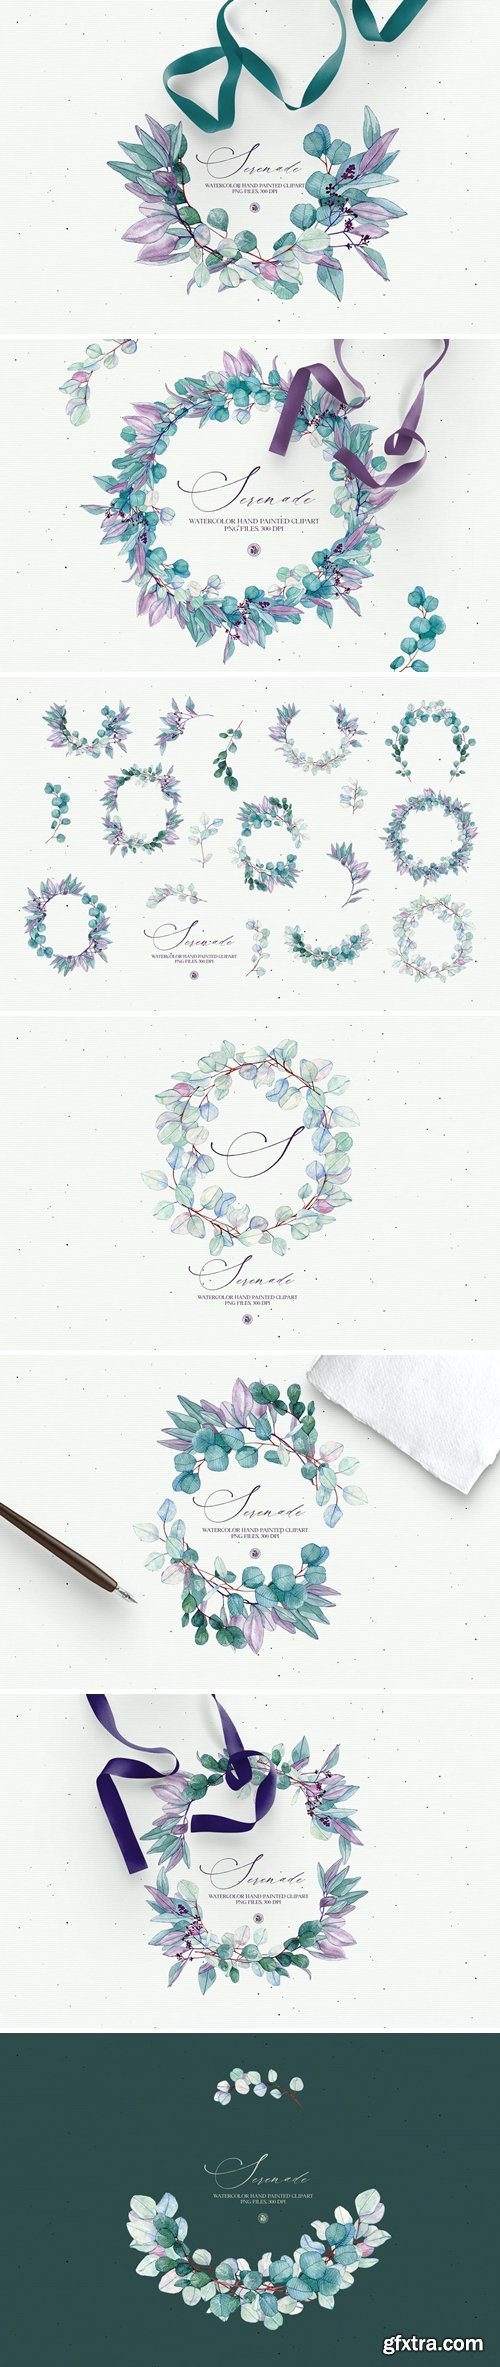 Serenade - watercolor floral clipart